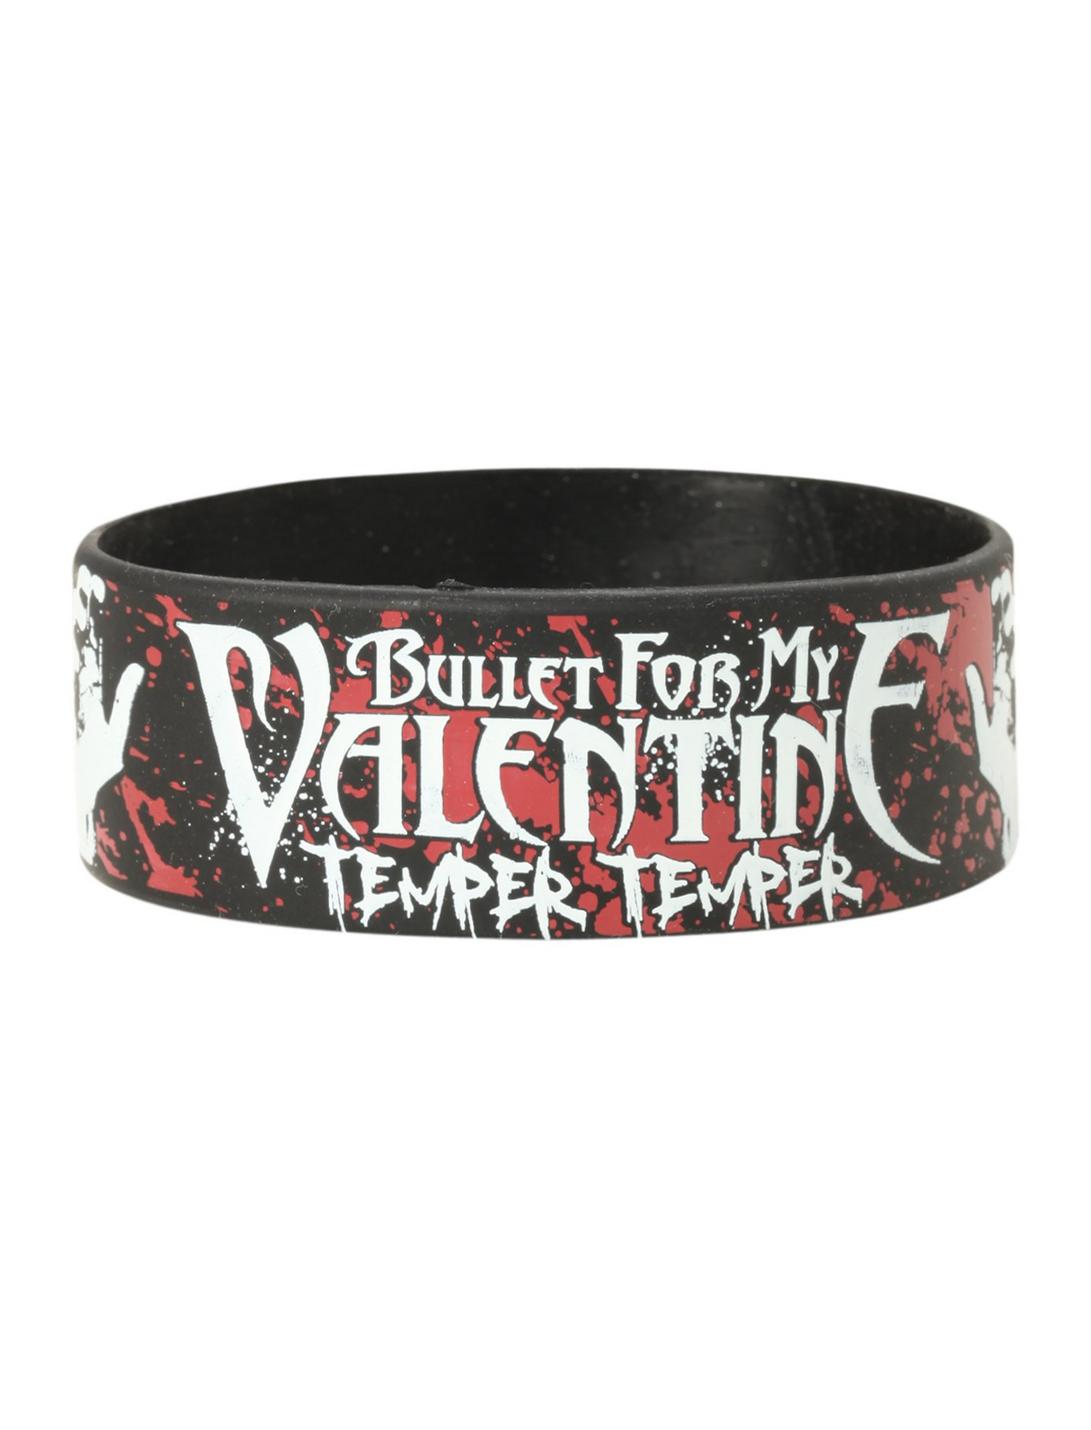 Bullet For My Valentine Temper Temper Hands Rubber Bracelet, , hi-res